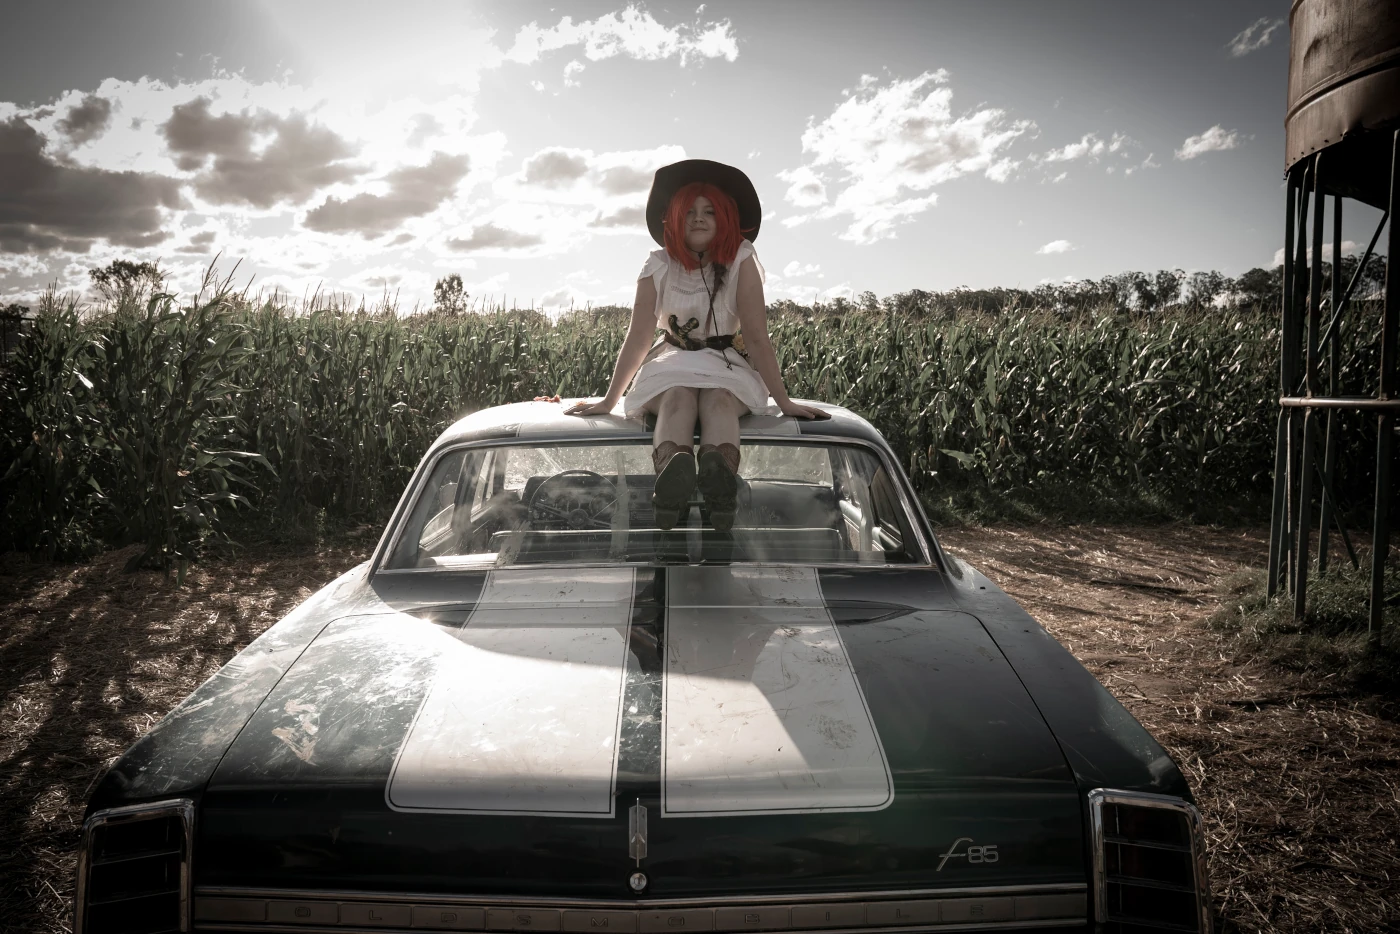 ein Mädchen mit roter Perücke, schwarzen Hut und weißem Kleid sitzt auf dem Dach eines stehenden schwarzweißen Autos, das Mädchen ist bewaffnet, im Hintergrund ist ein sonnenbeschienenes Kornfeld zu sehen